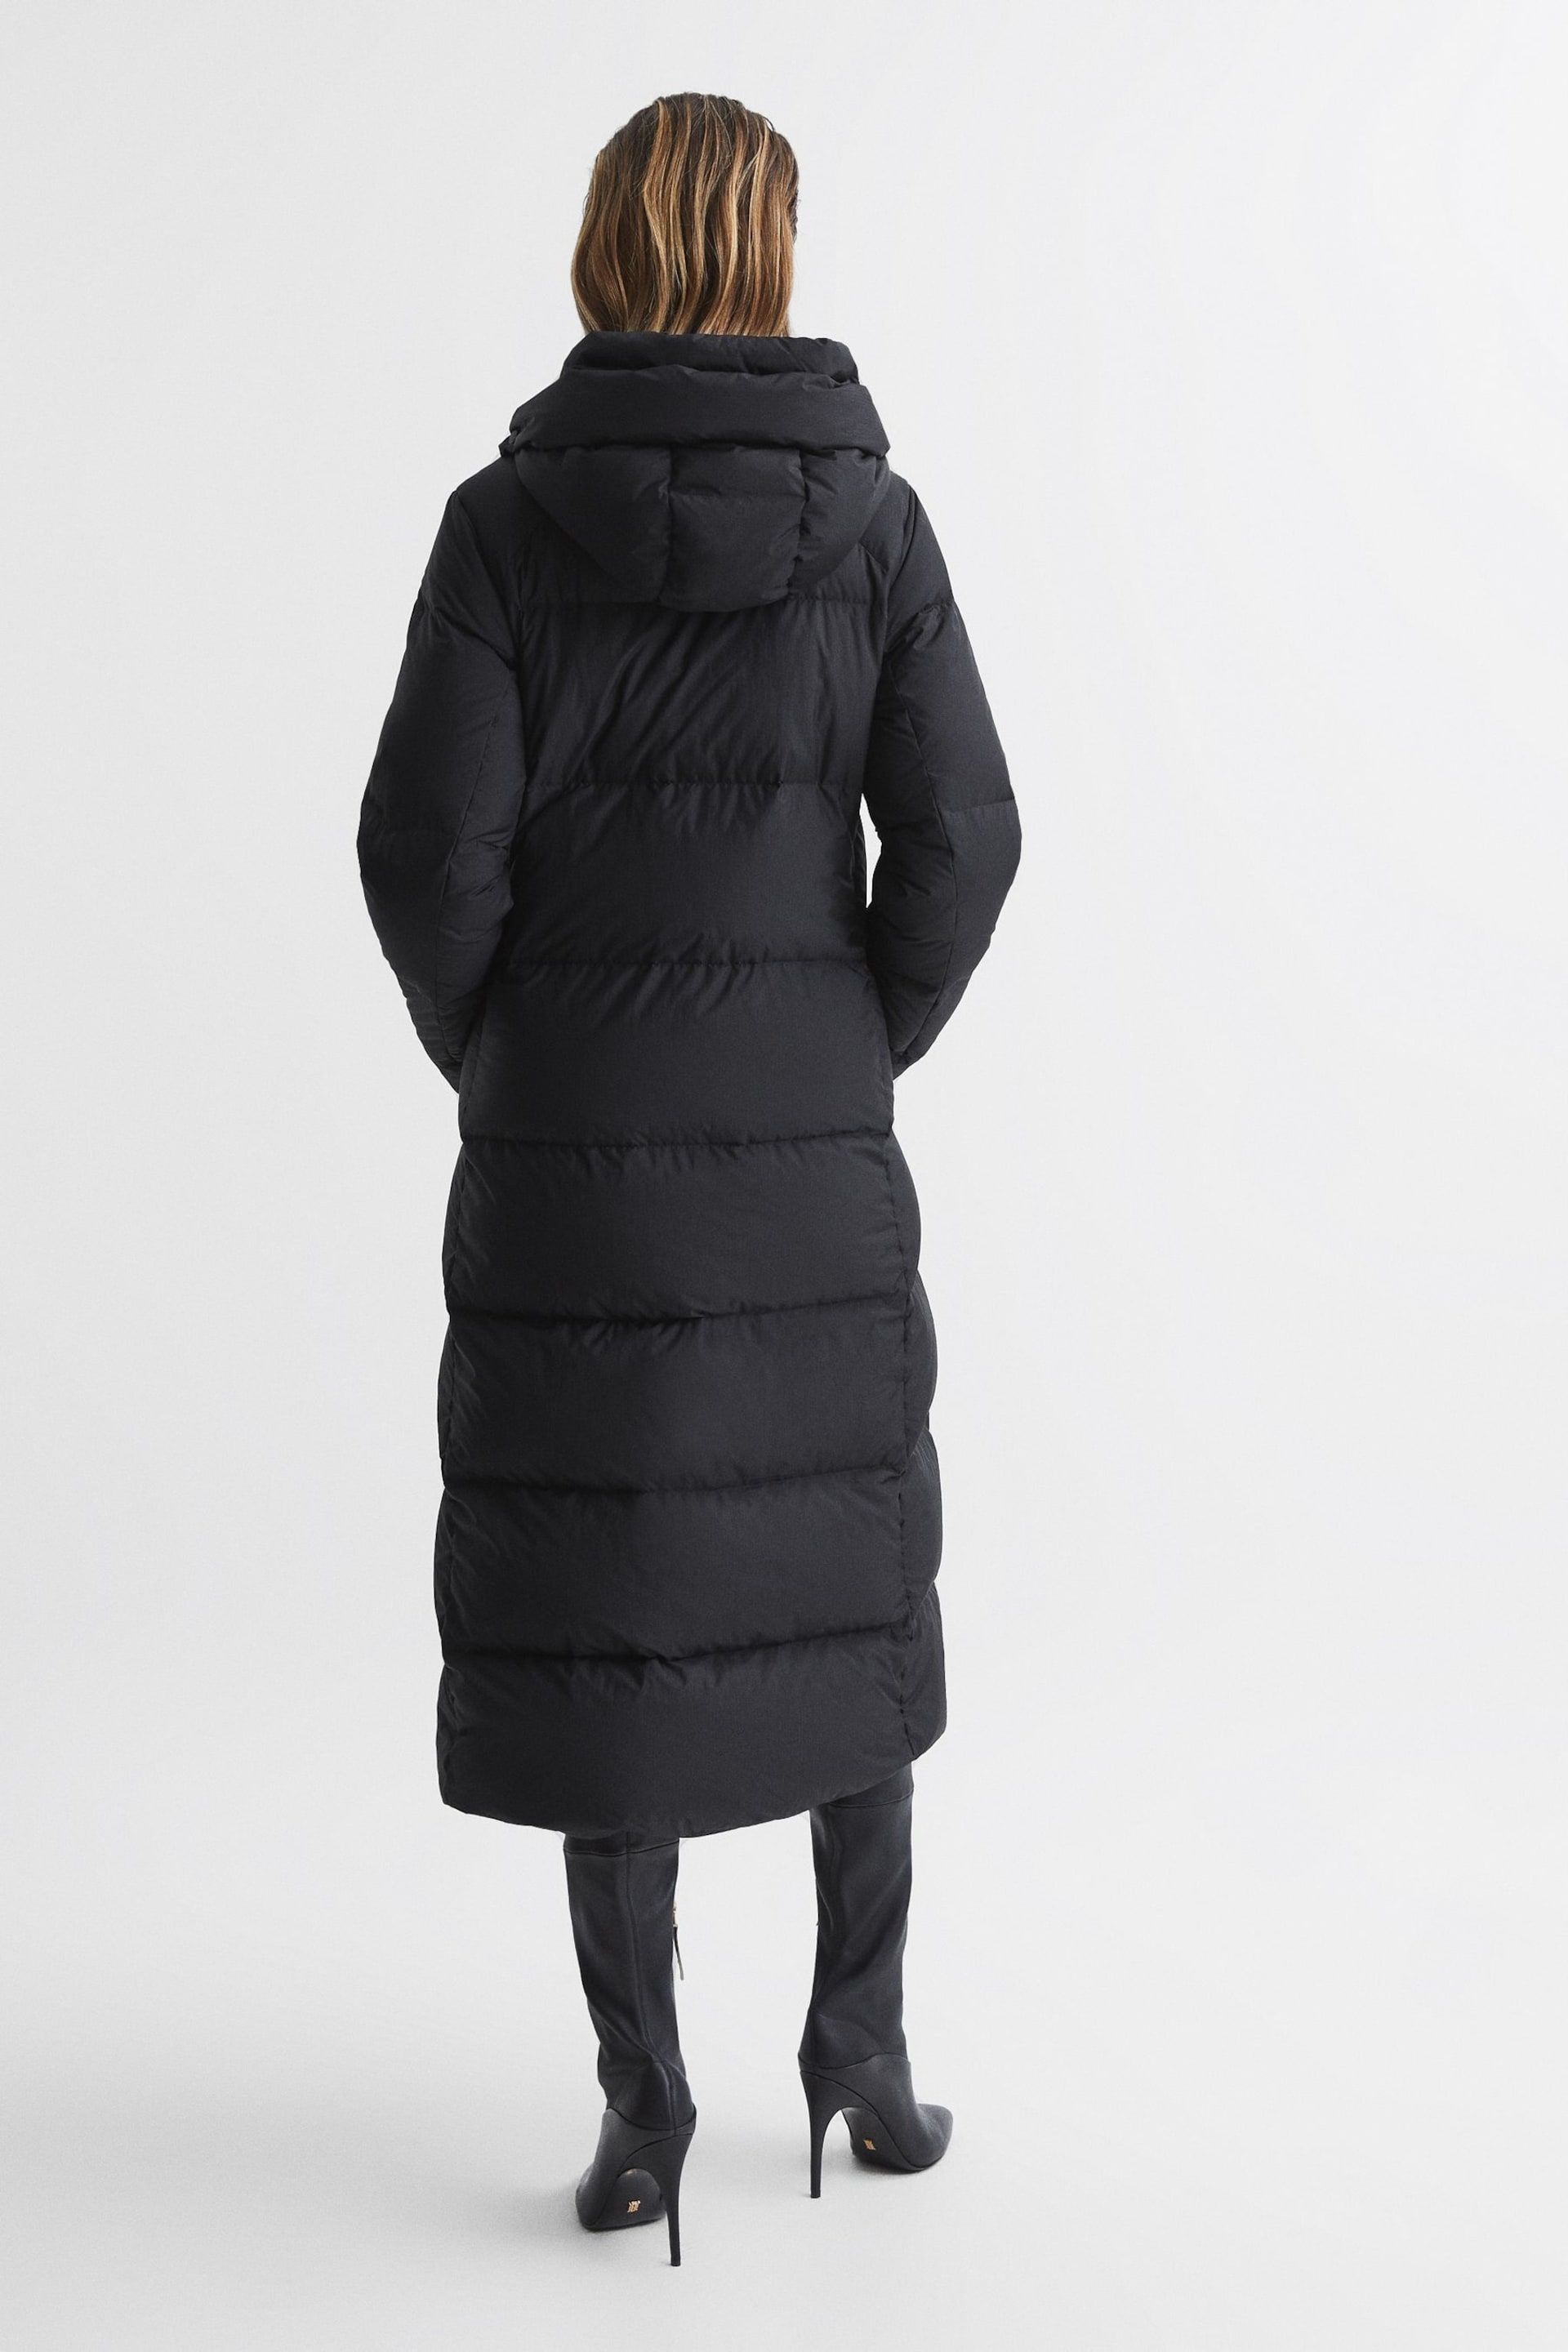 Reiss Black Tilde Longline Hooded Puffer Coat - Image 5 of 8